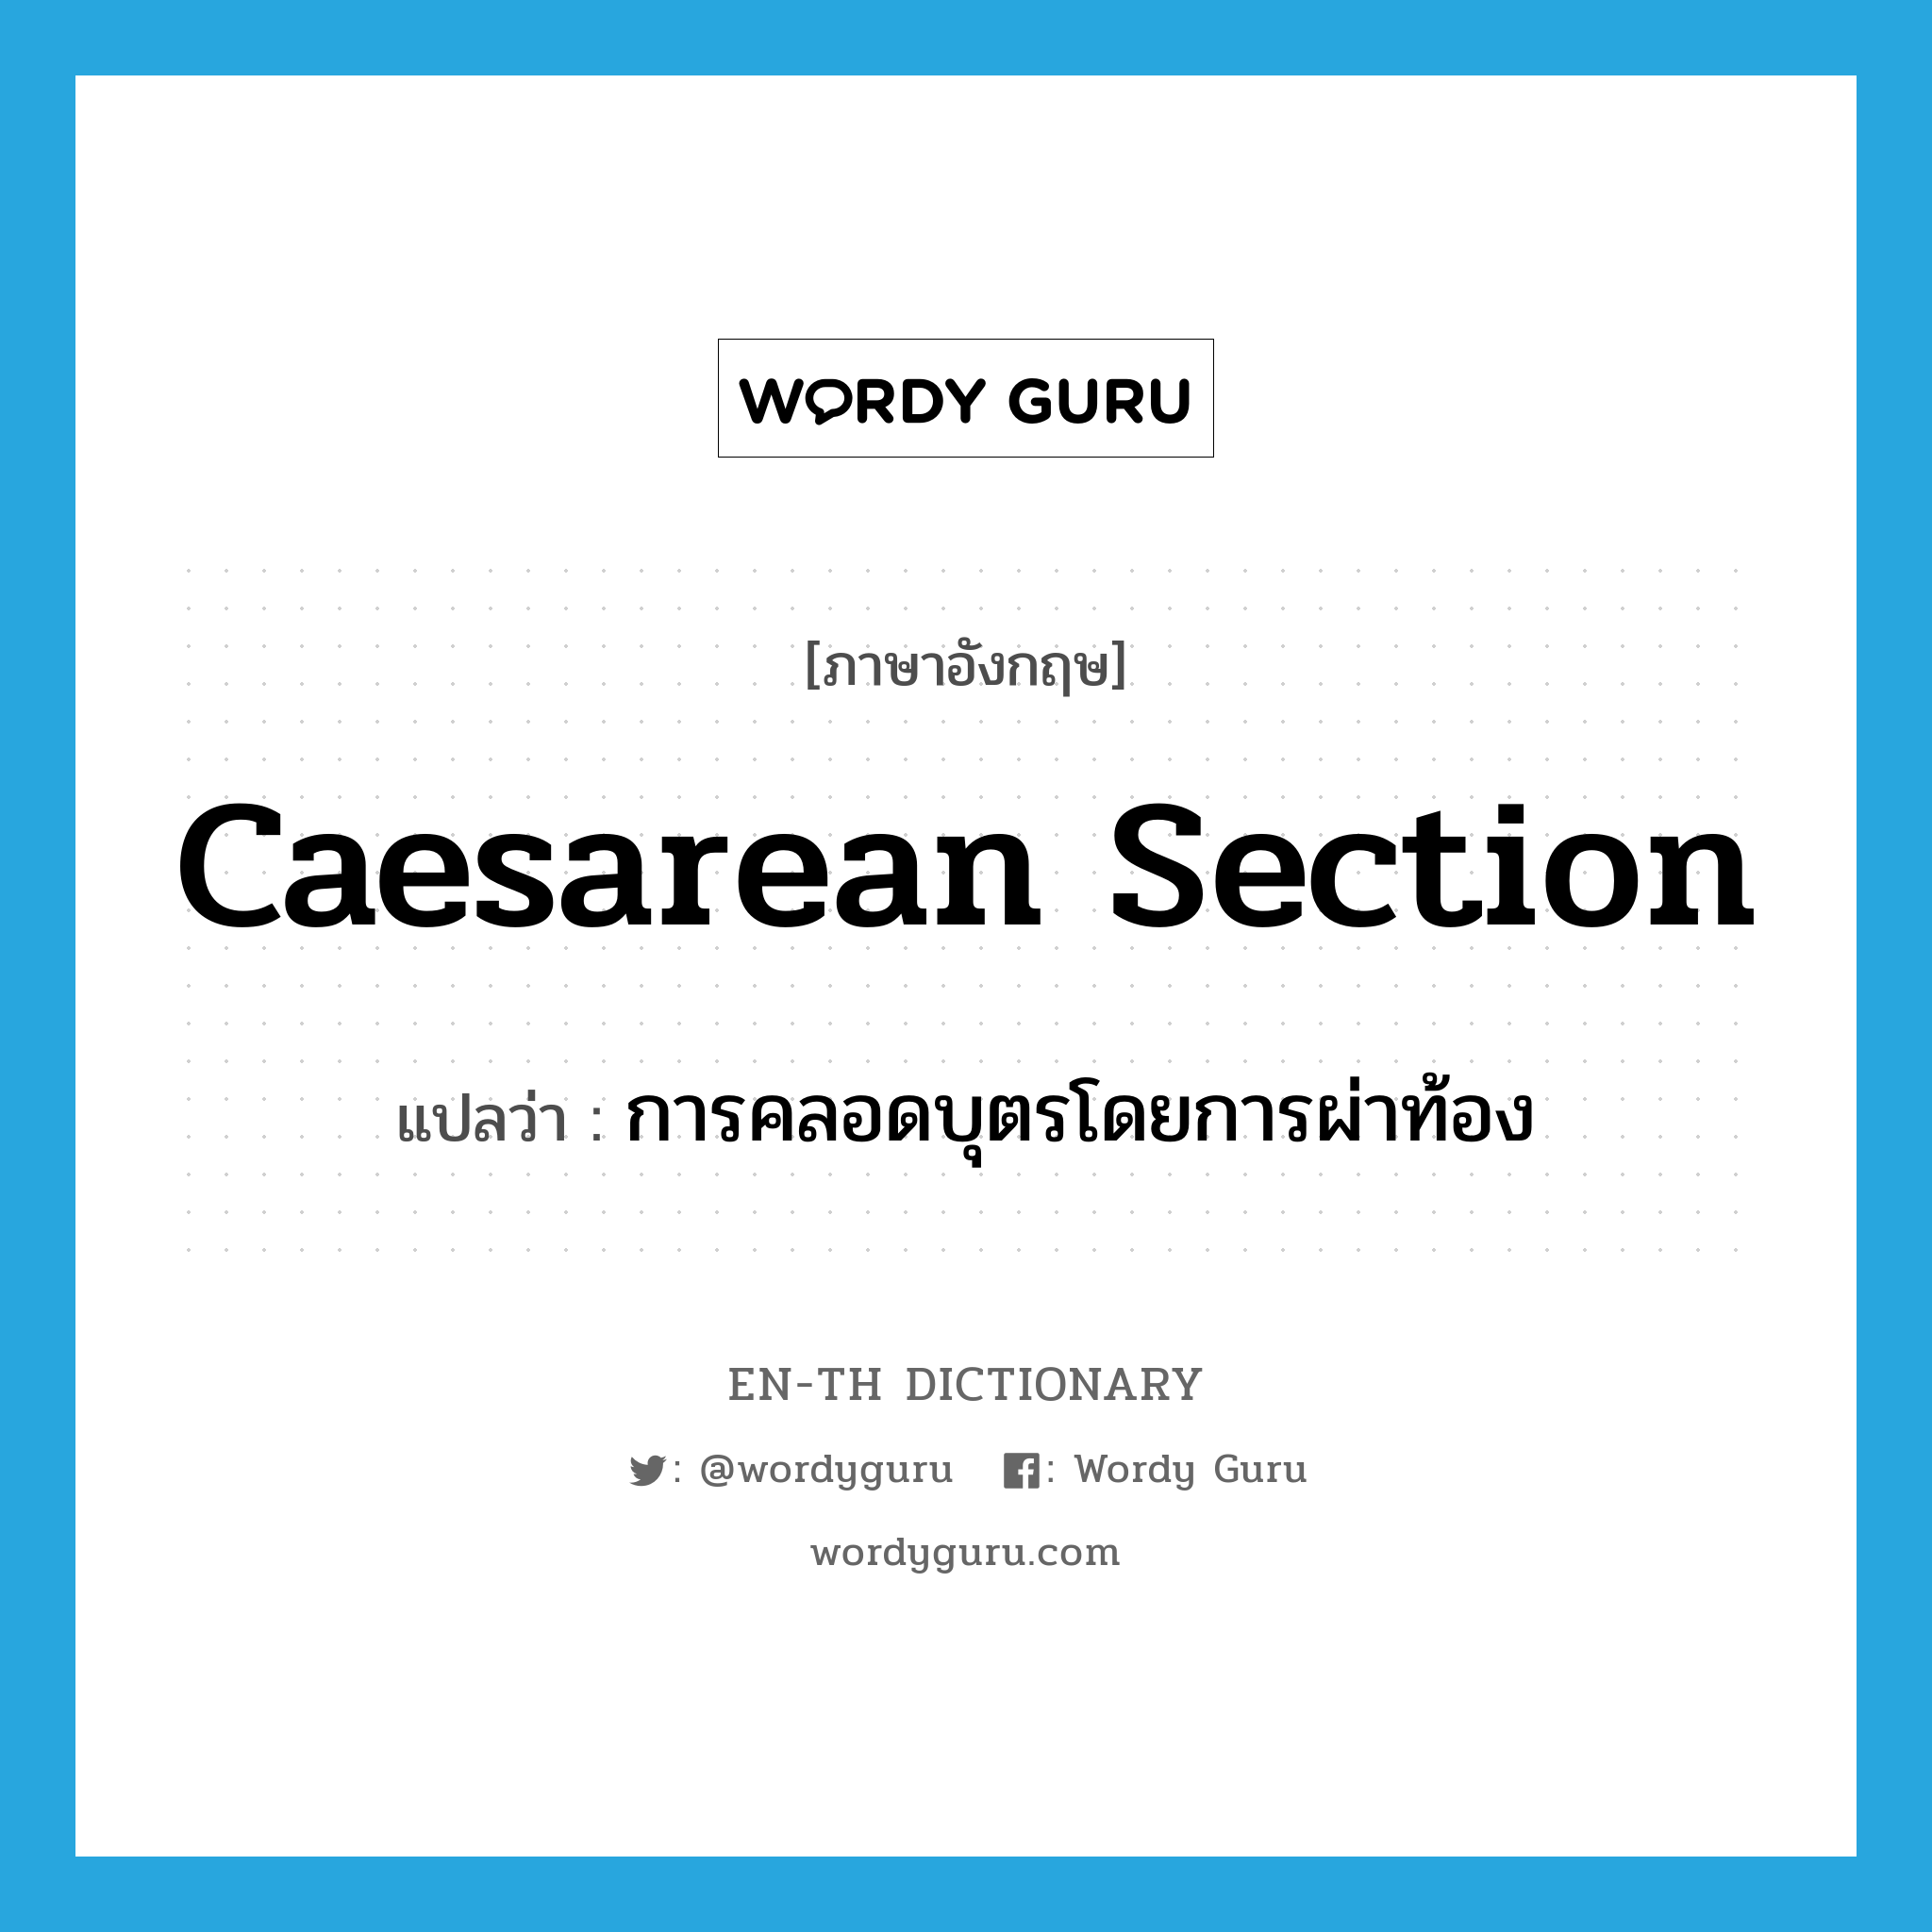 caesarean section แปลว่า?, คำศัพท์ภาษาอังกฤษ caesarean section แปลว่า การคลอดบุตรโดยการผ่าท้อง ประเภท N หมวด N